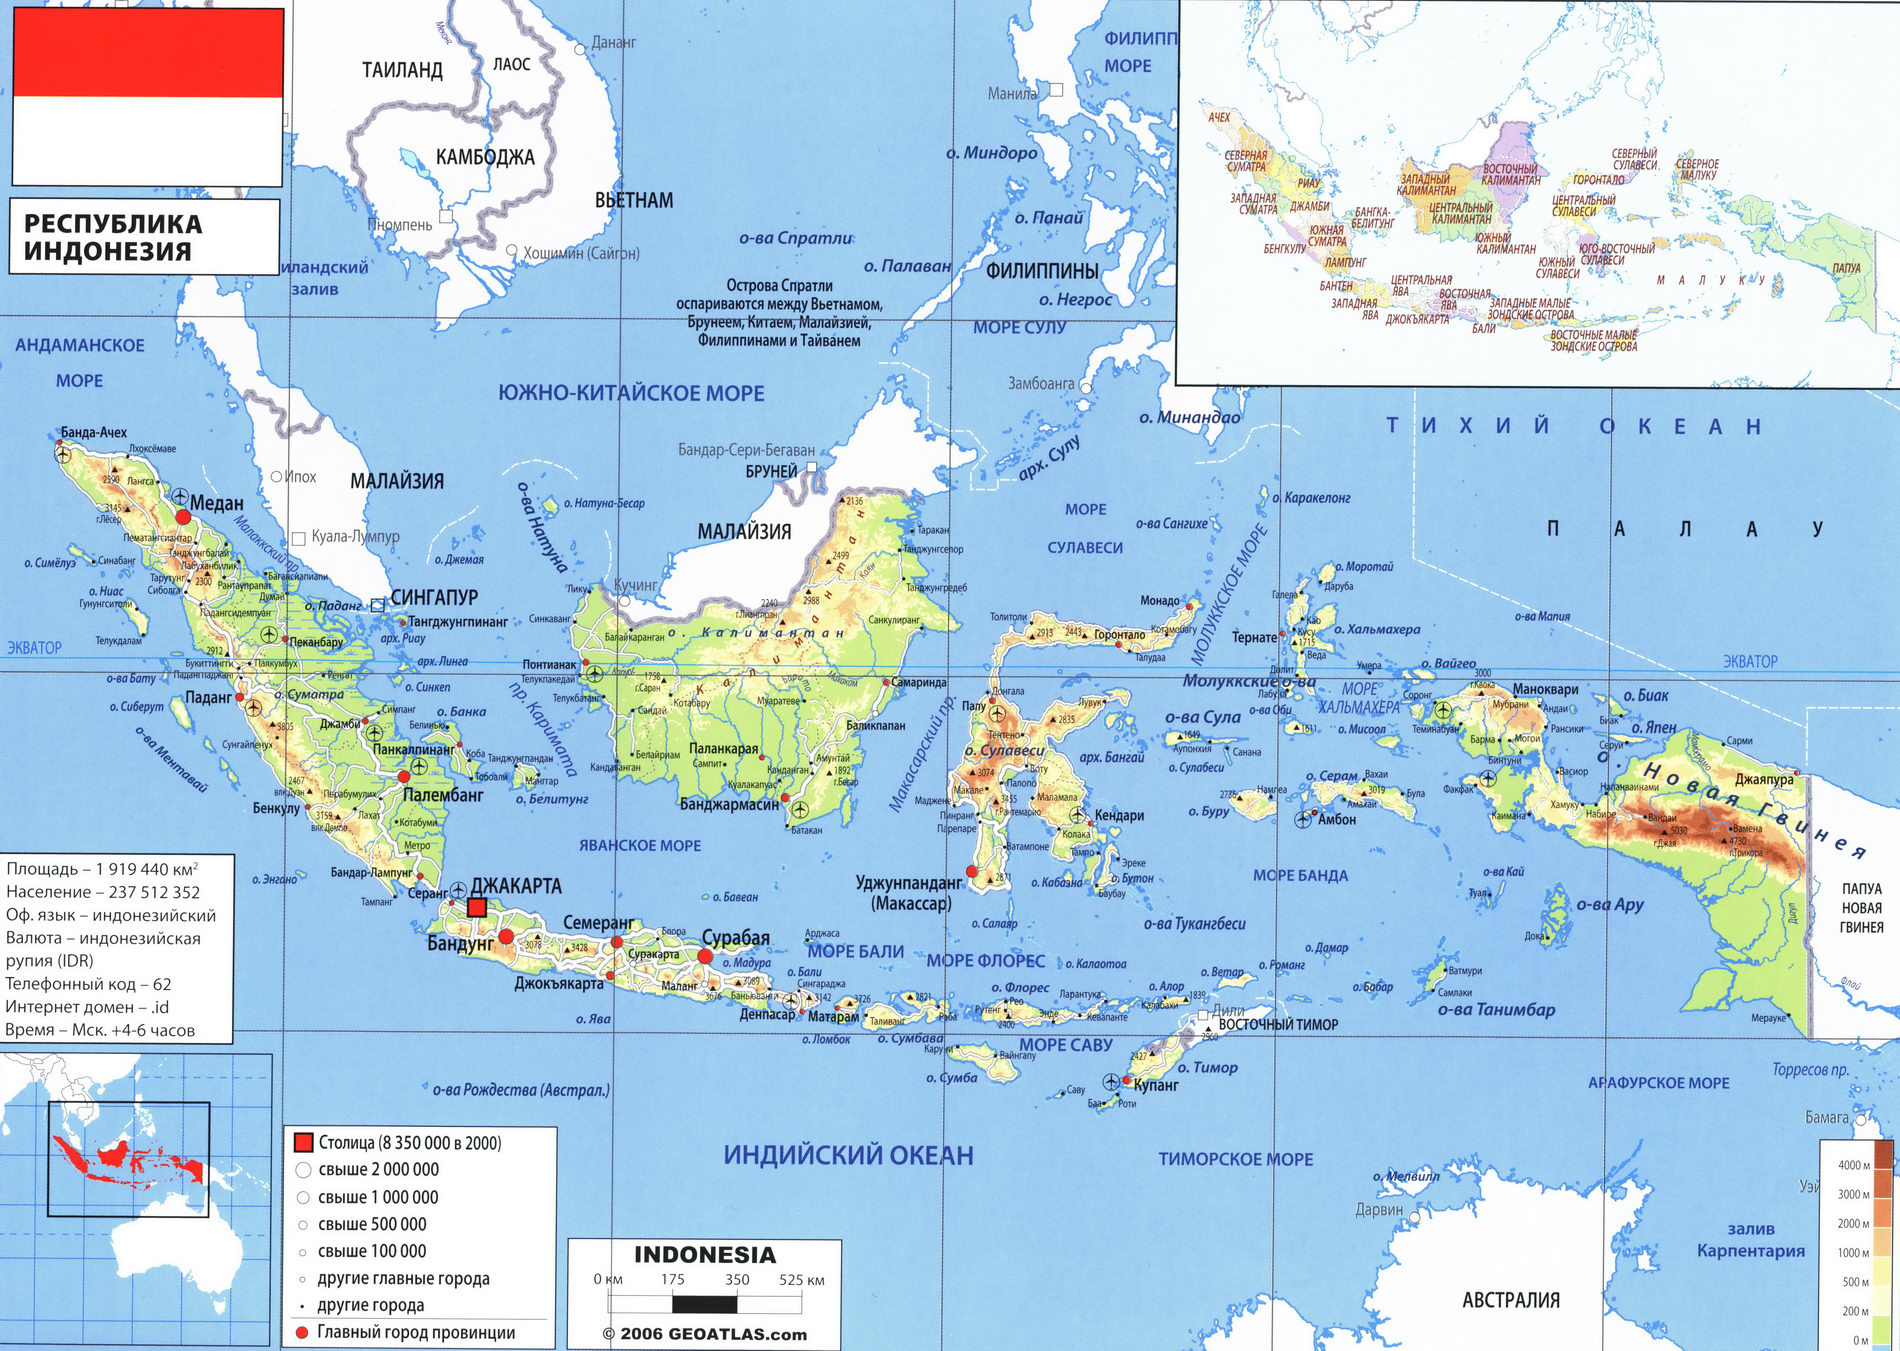 Индонезия карта на русском языке, описание страны география - Атлас мира